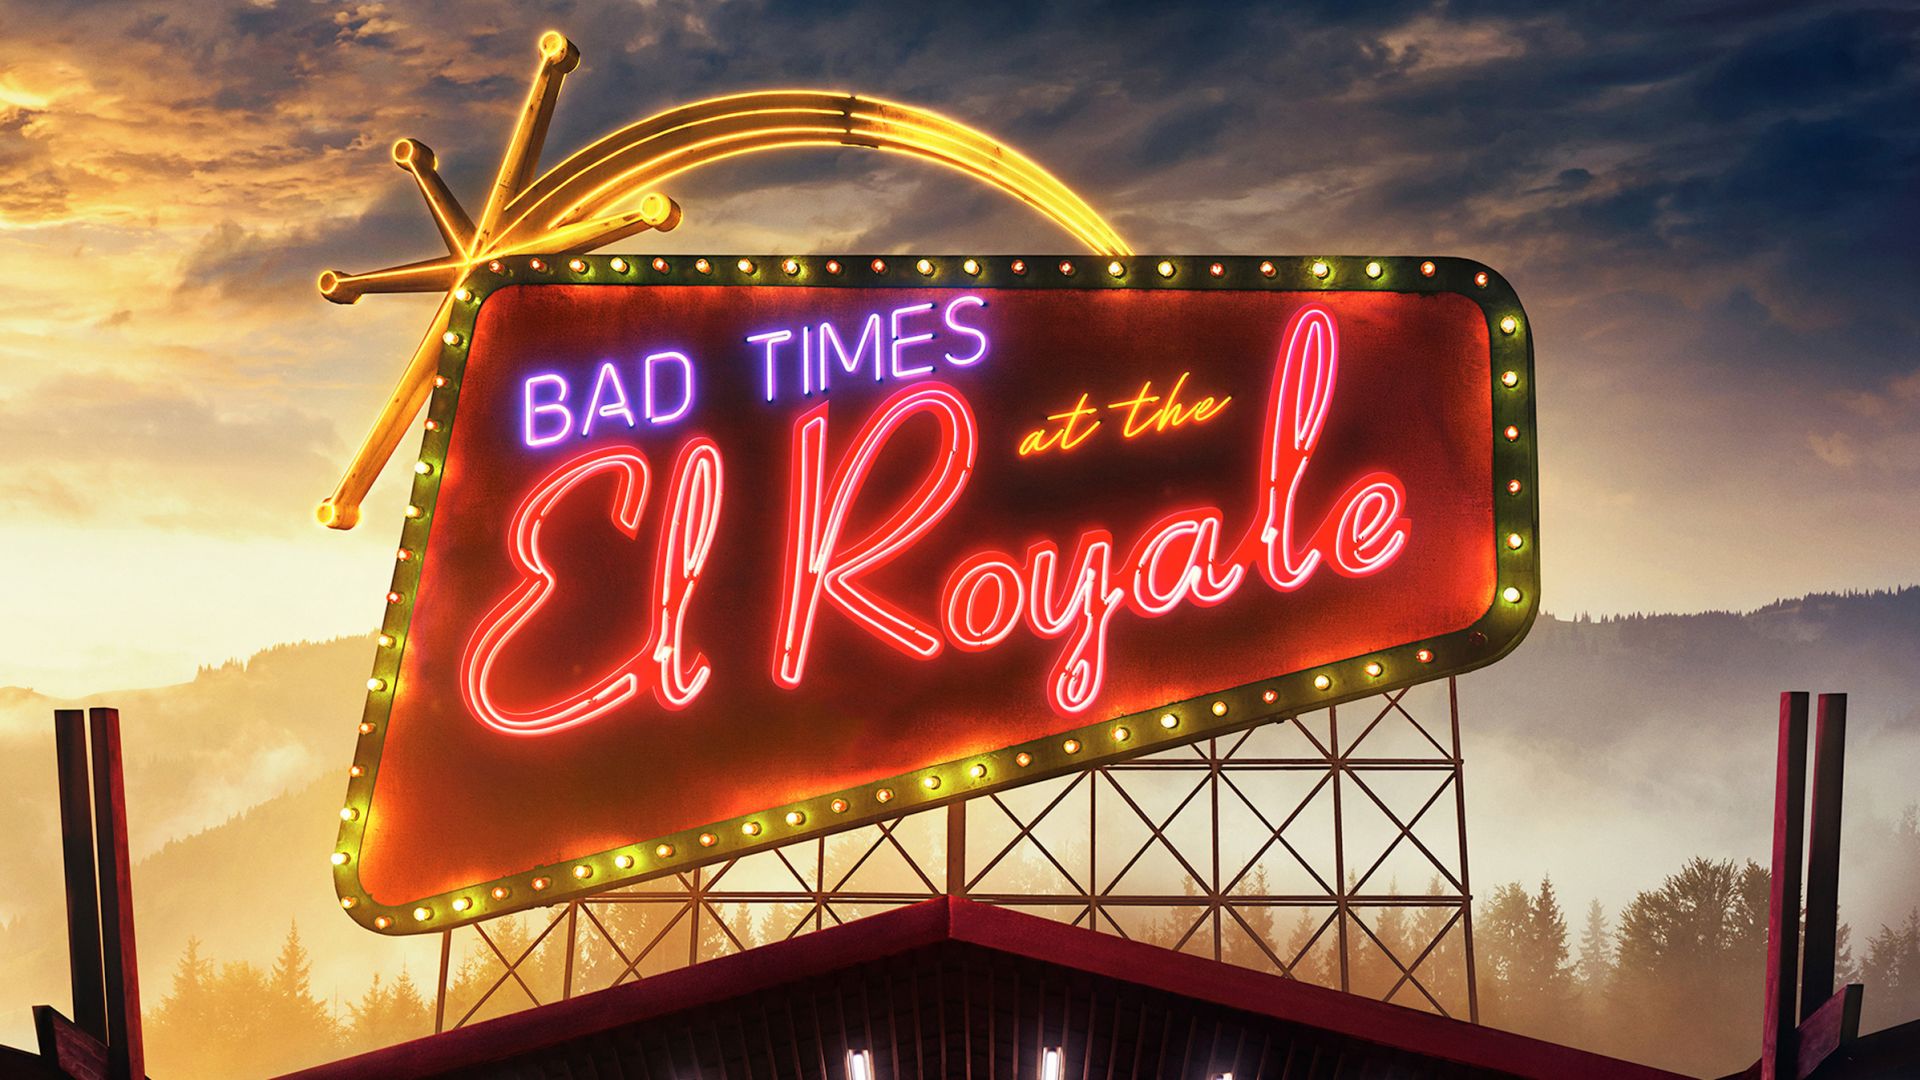 Ничего хорошего в отеле Эль Рояль, Bad Times at the El Royale, poster, HD (horizontal)